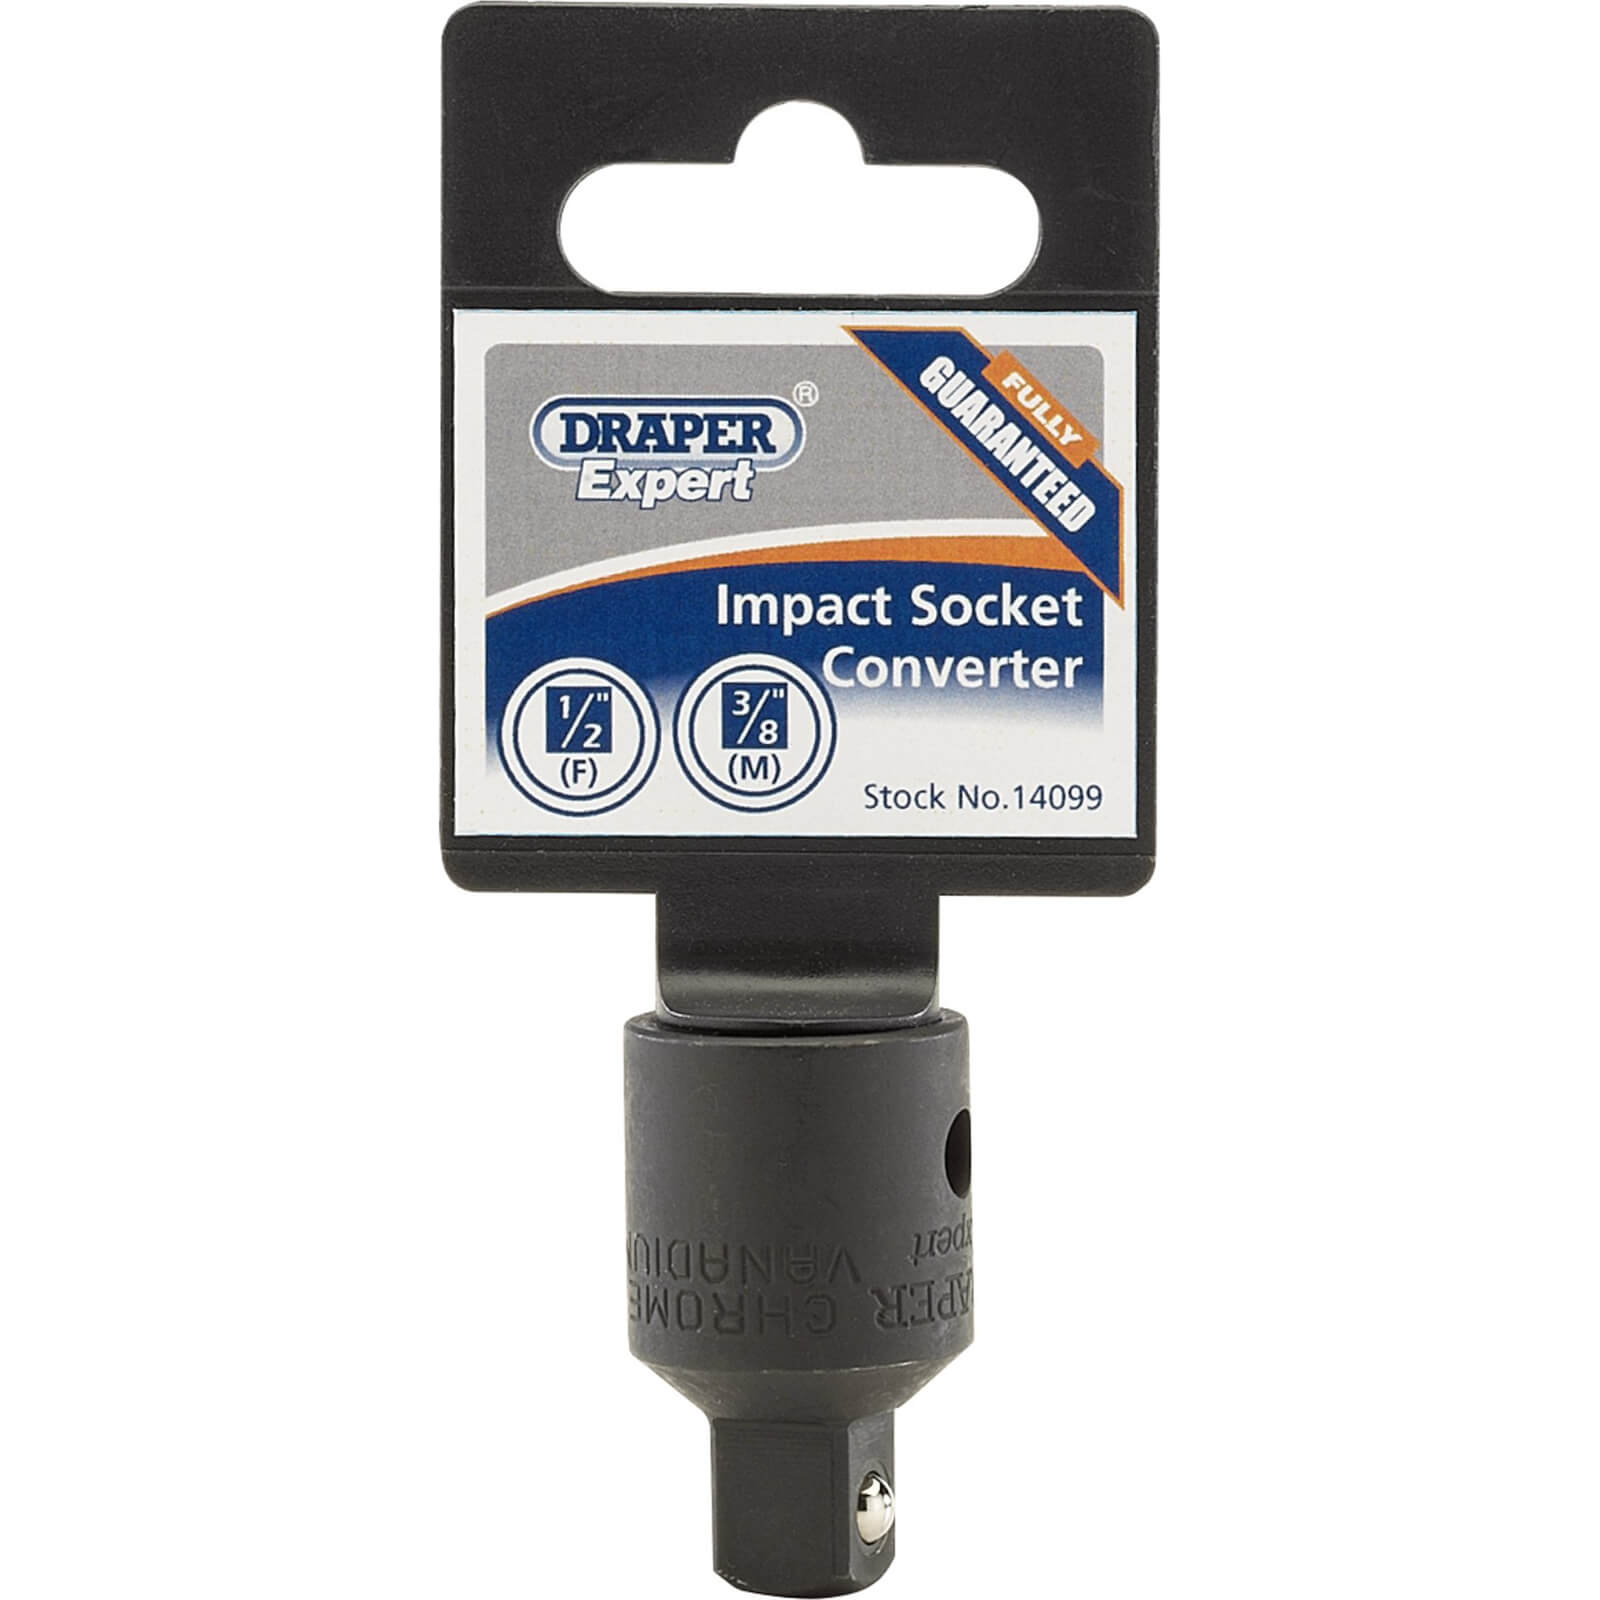 Image of Draper Expert Impact Socket Converter 1/2" Female 3/8" Female